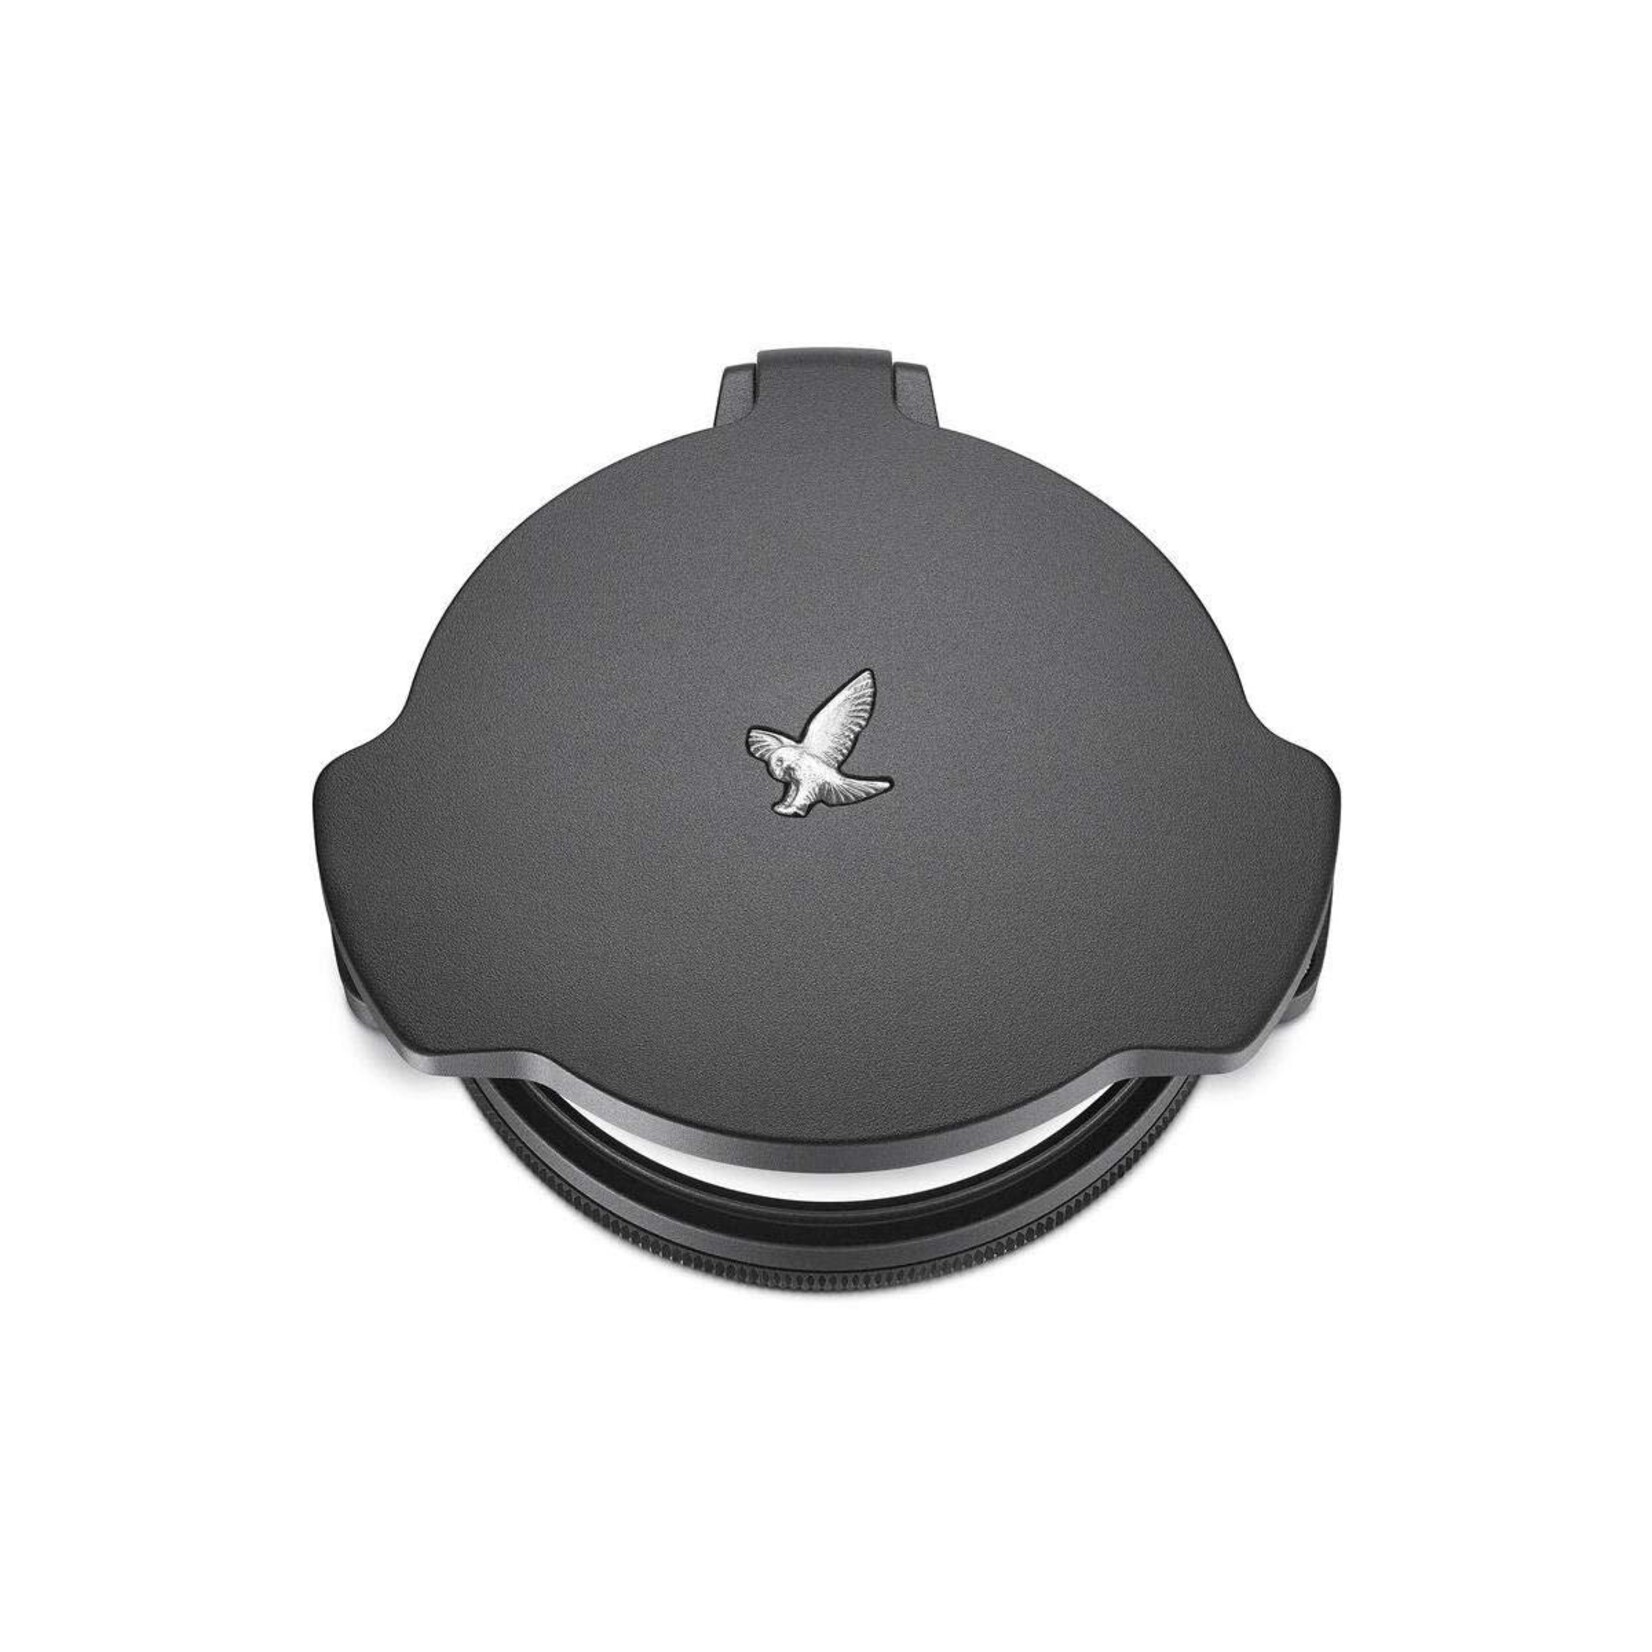 Swarovski Swarovski Optiks Scope Lens Protector Caps